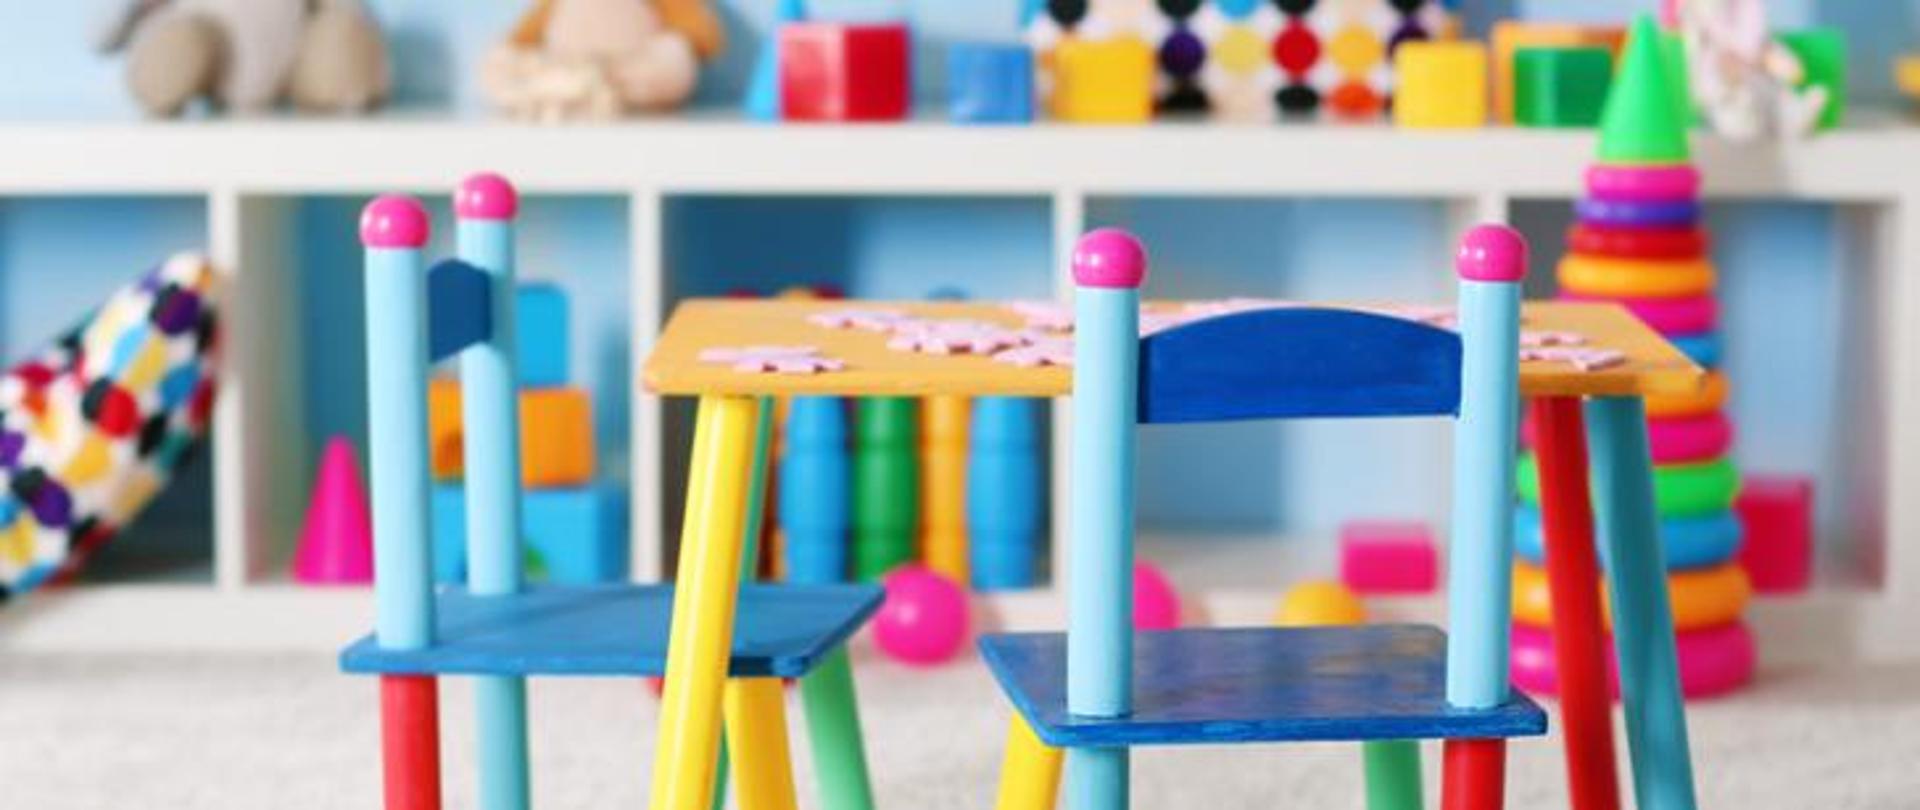 Kolorowy pokój zabaw dla dzieci 